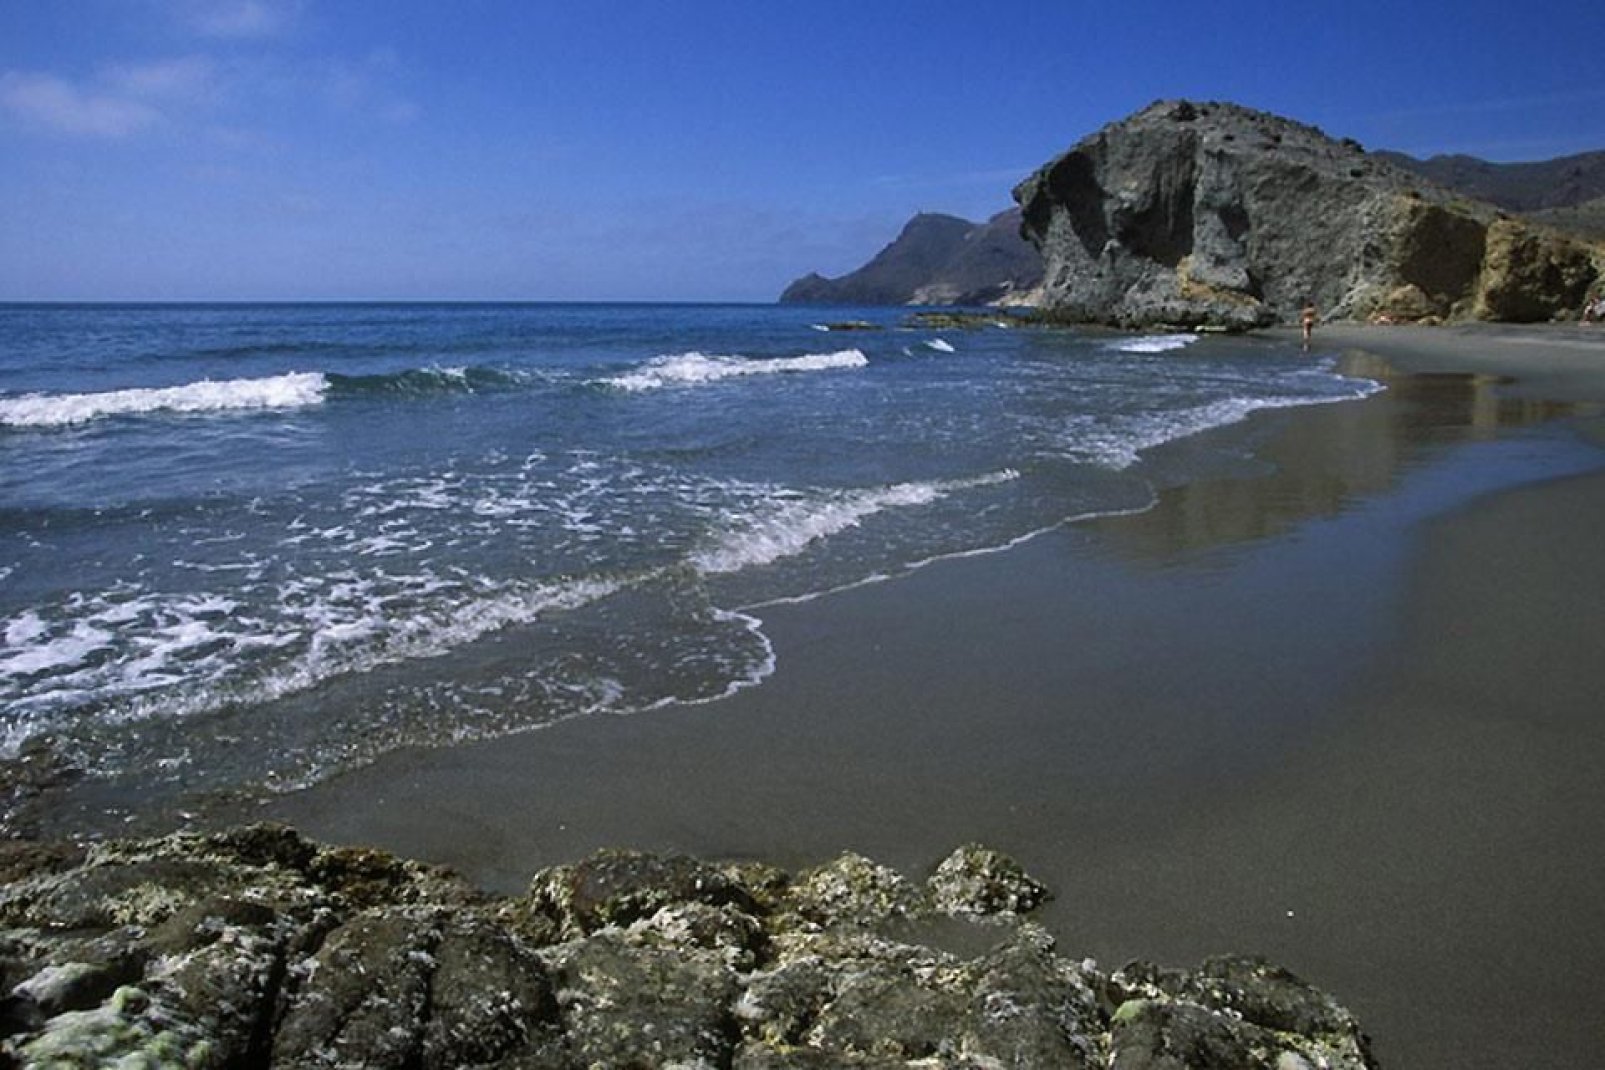 De magnifiques et vastes plages vierges entourées par des falaises se trouvent dans les environs d'Almeria.